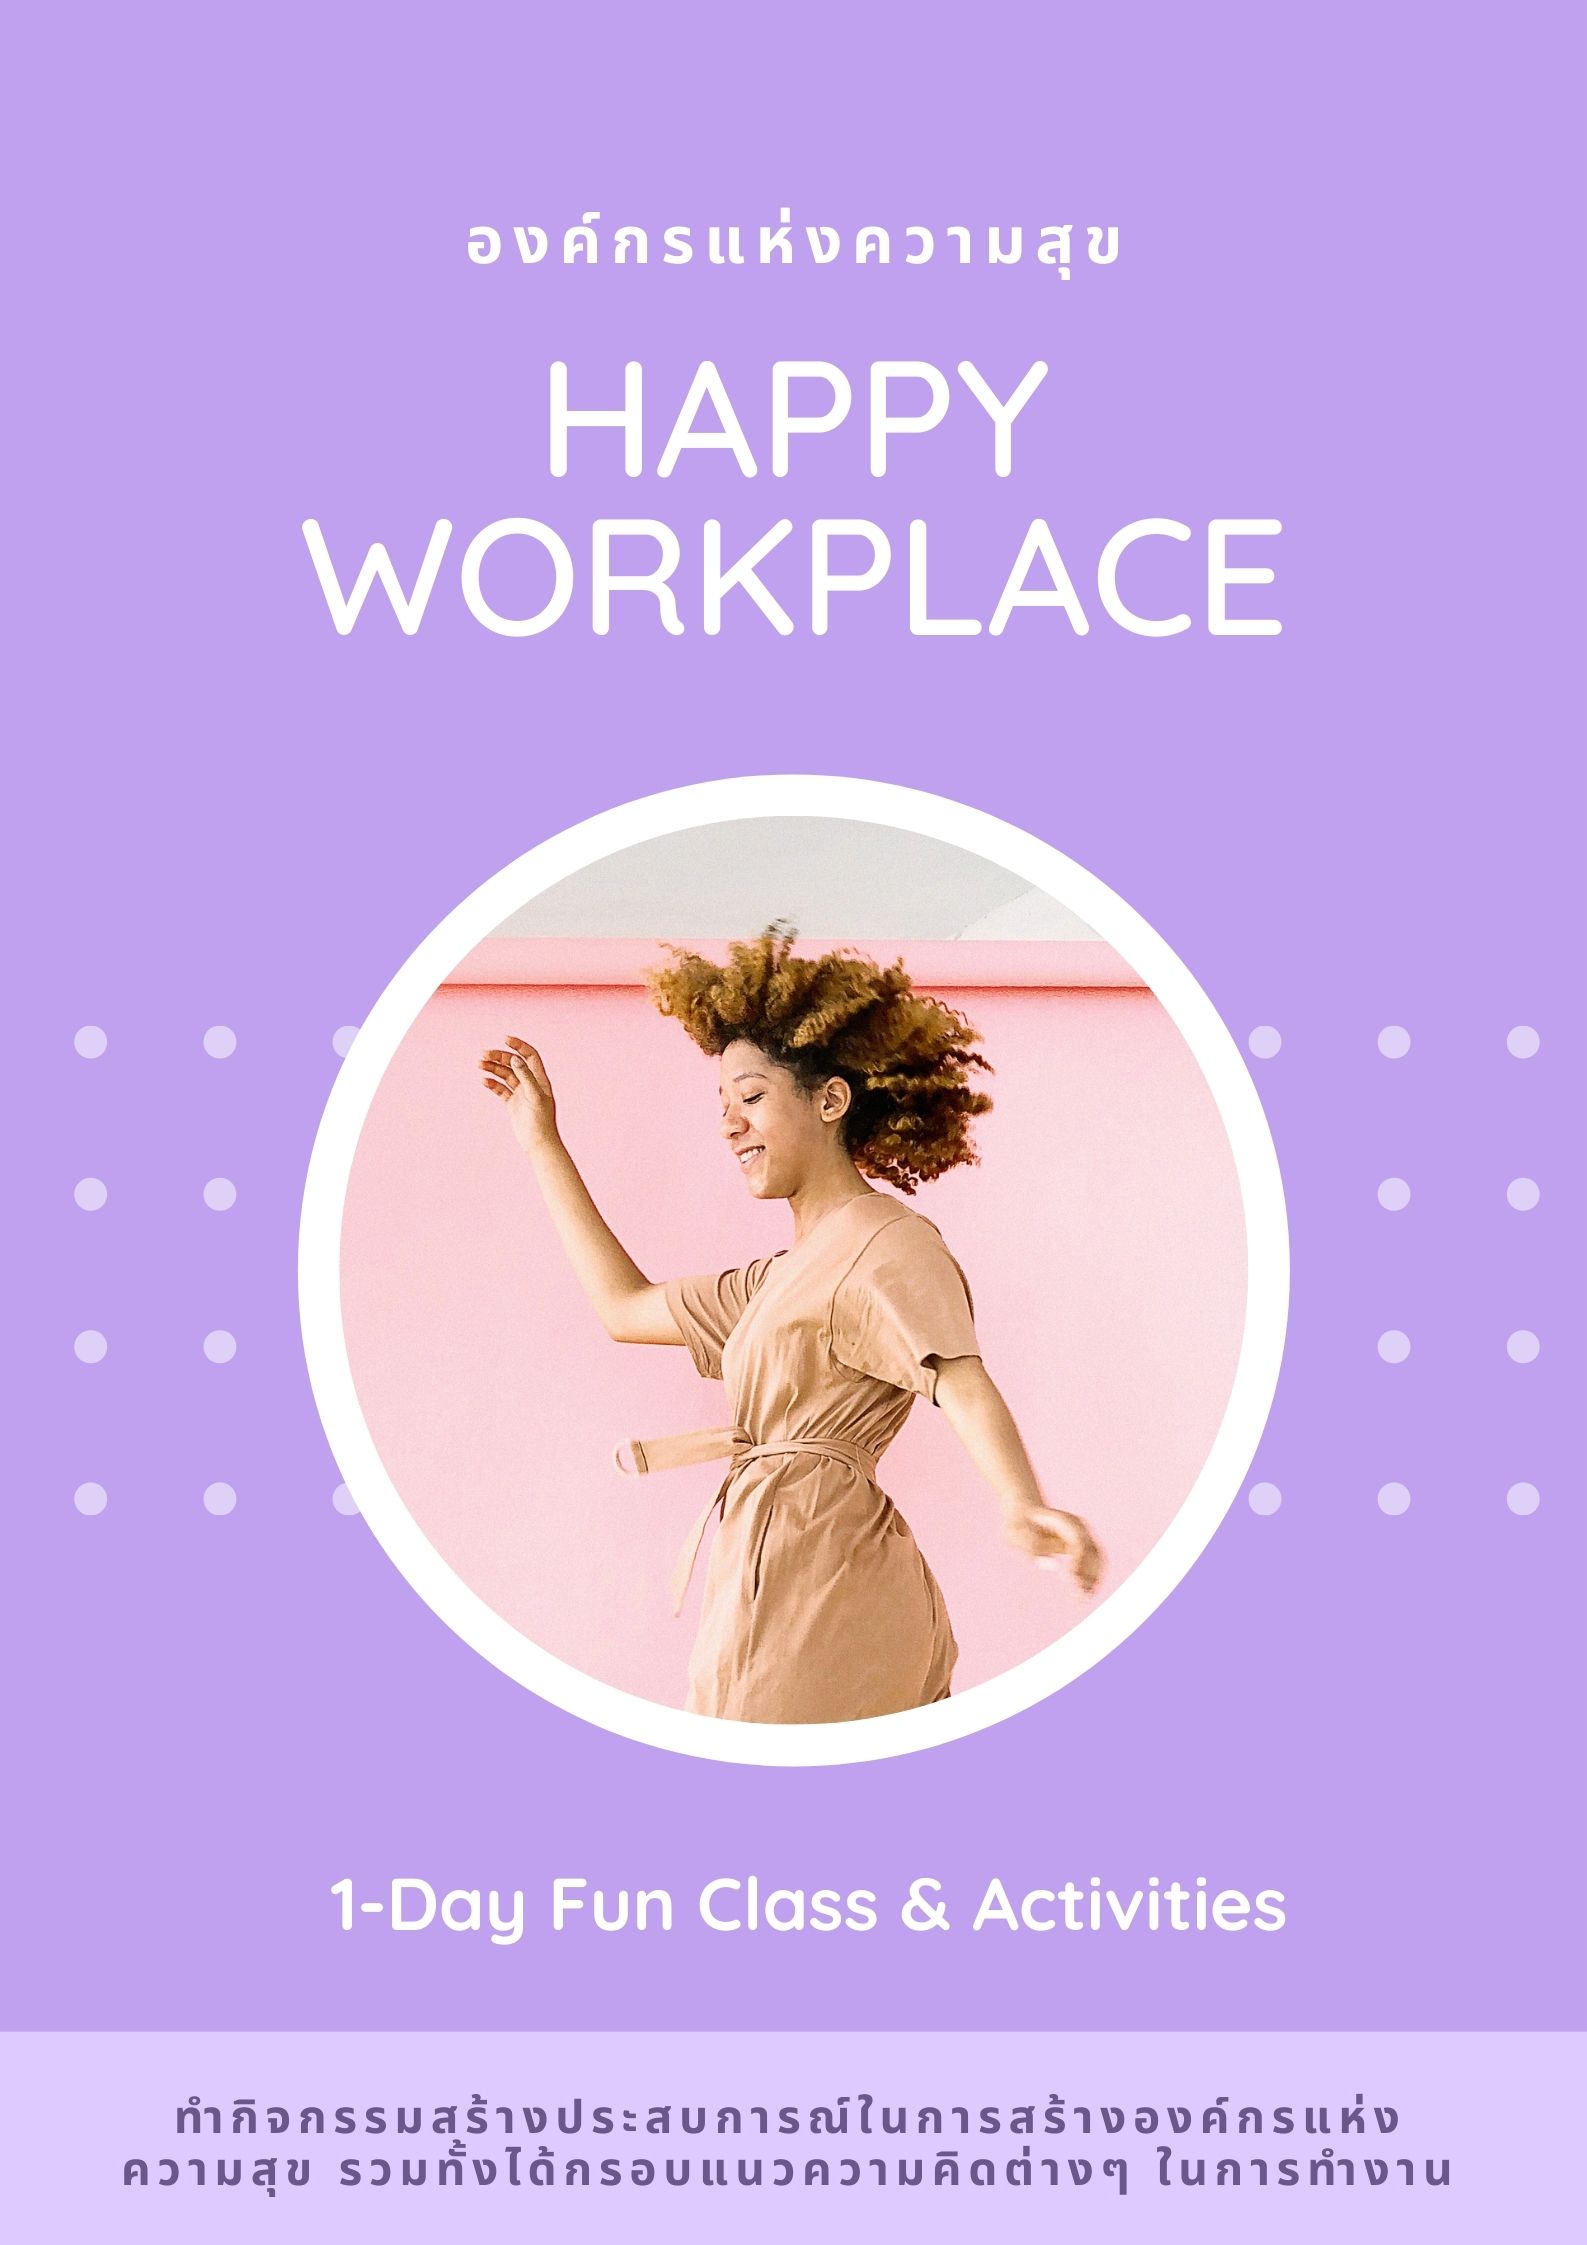 Happy workplace องค์กรแห่งความสุข (สุนทรียะแห่งองค์กร)